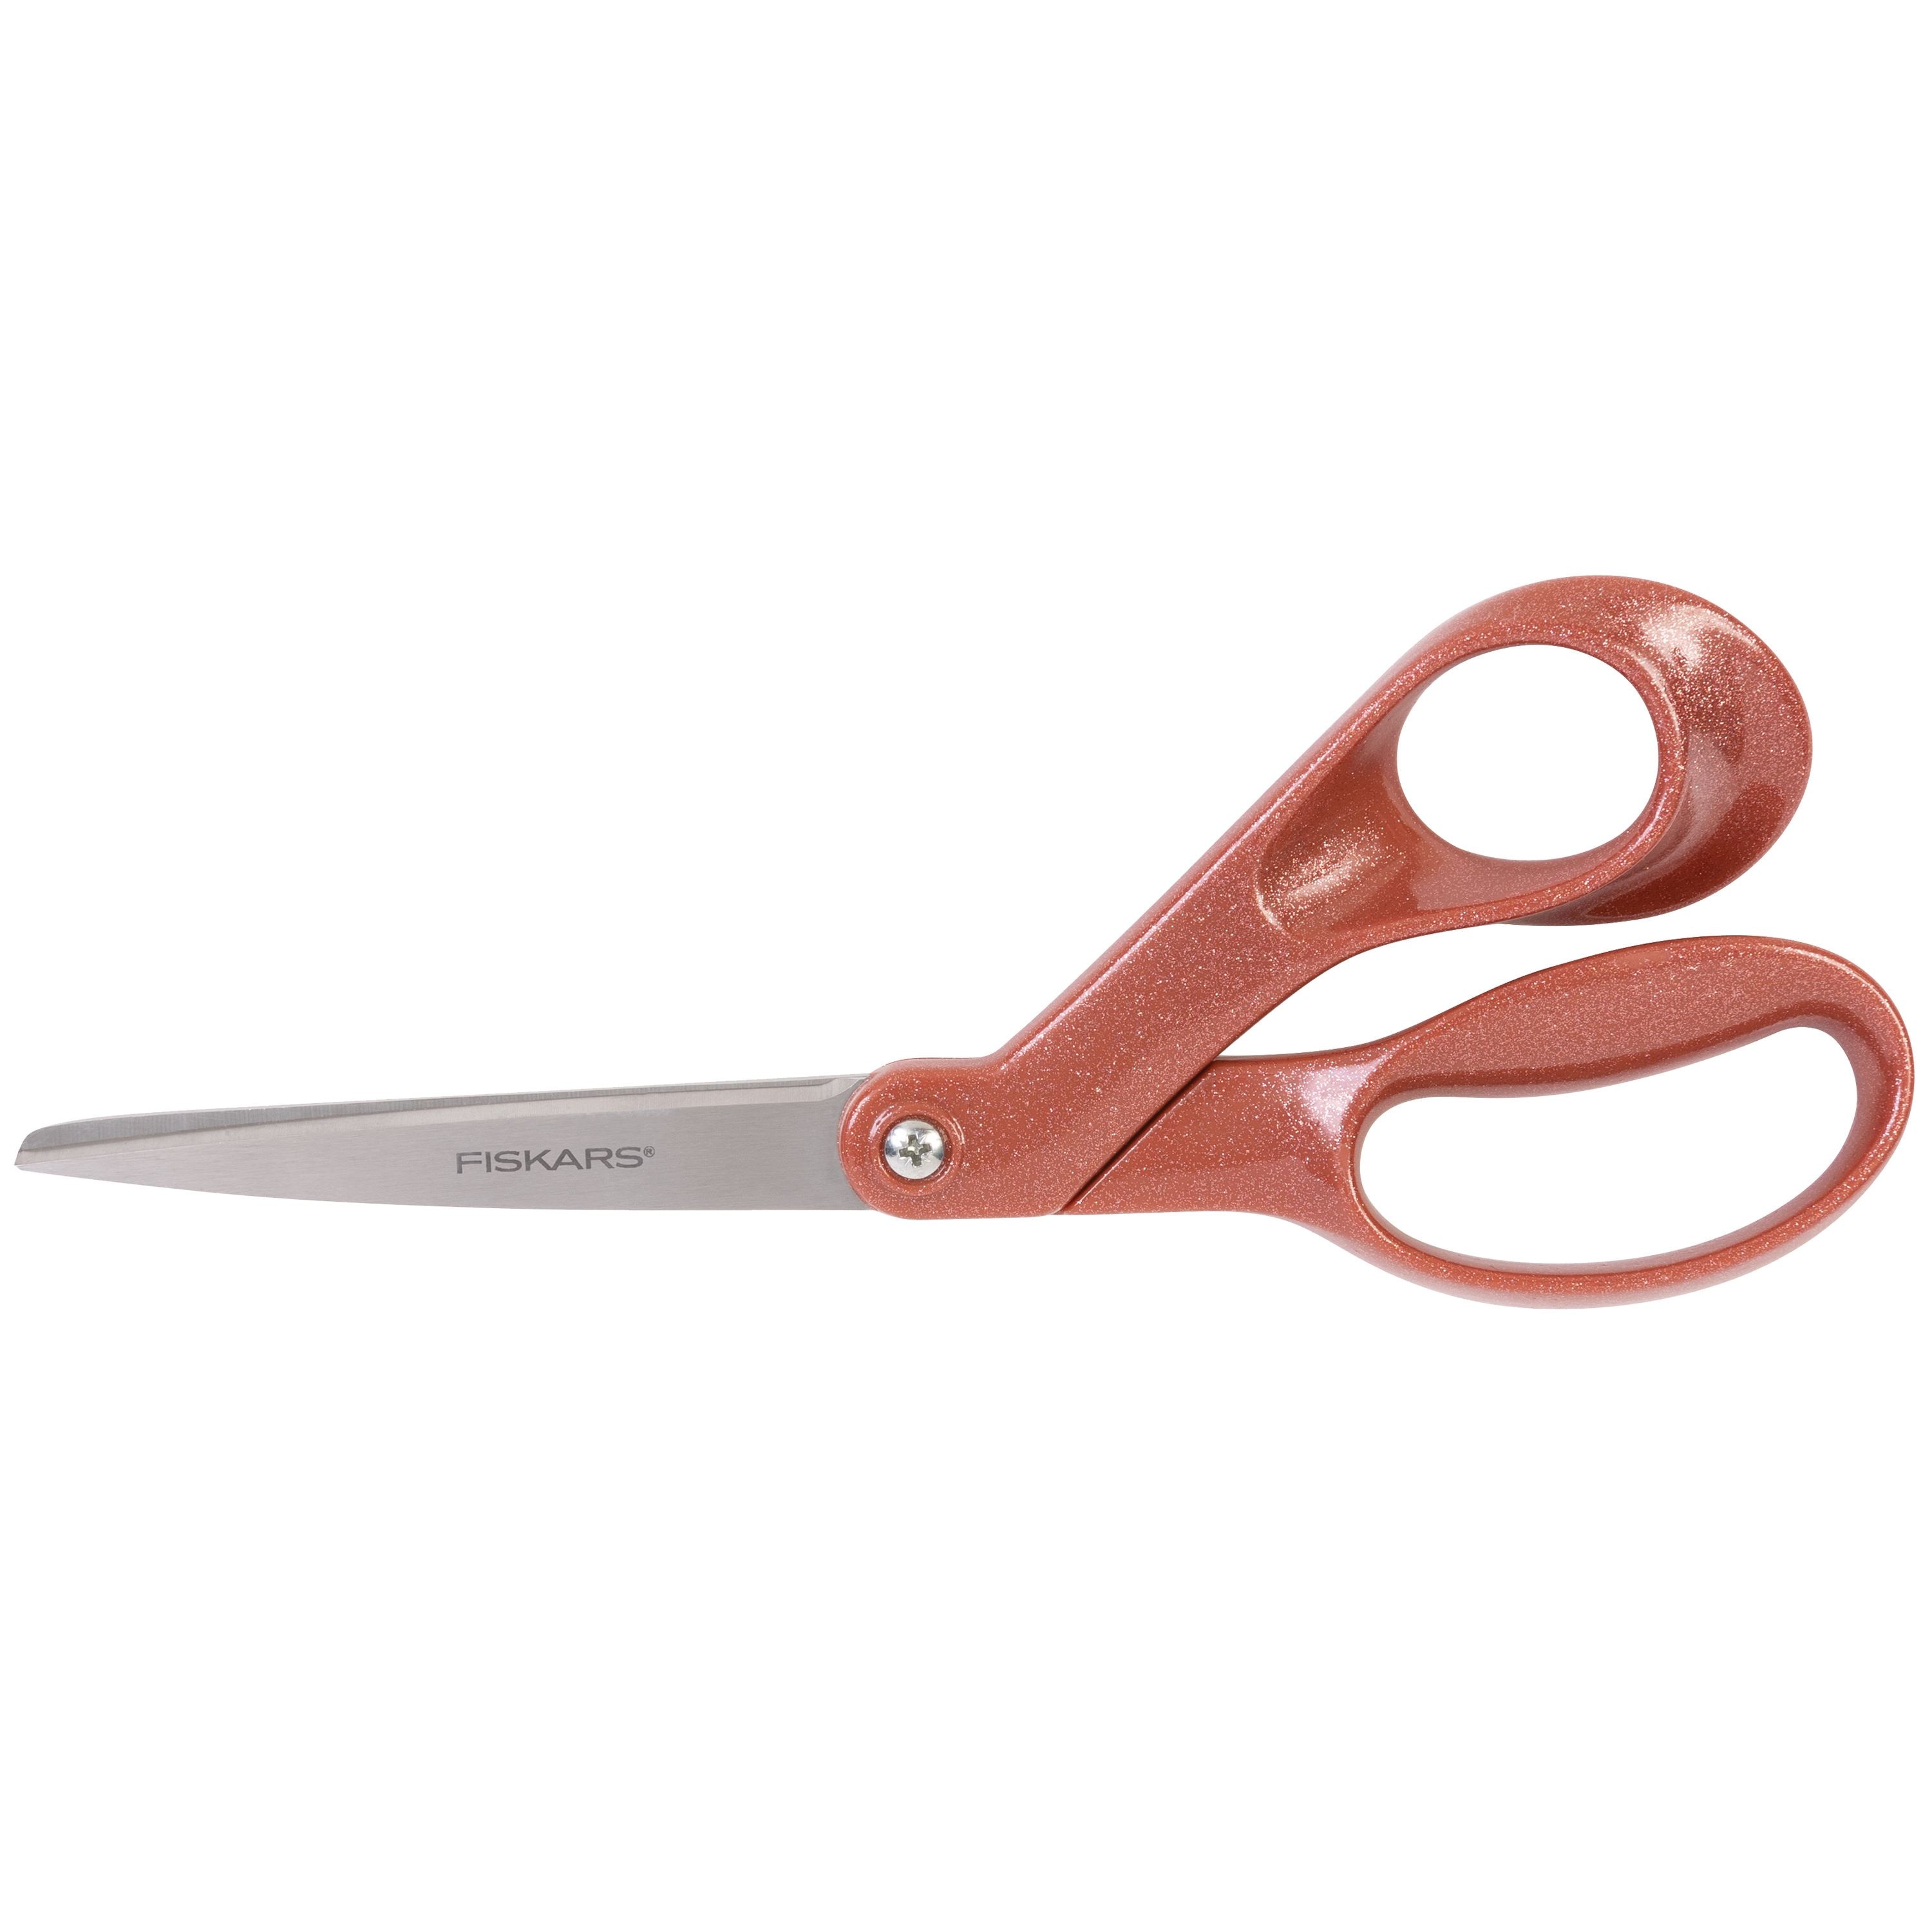 Buy Fiskars Pinking Shear Scissors